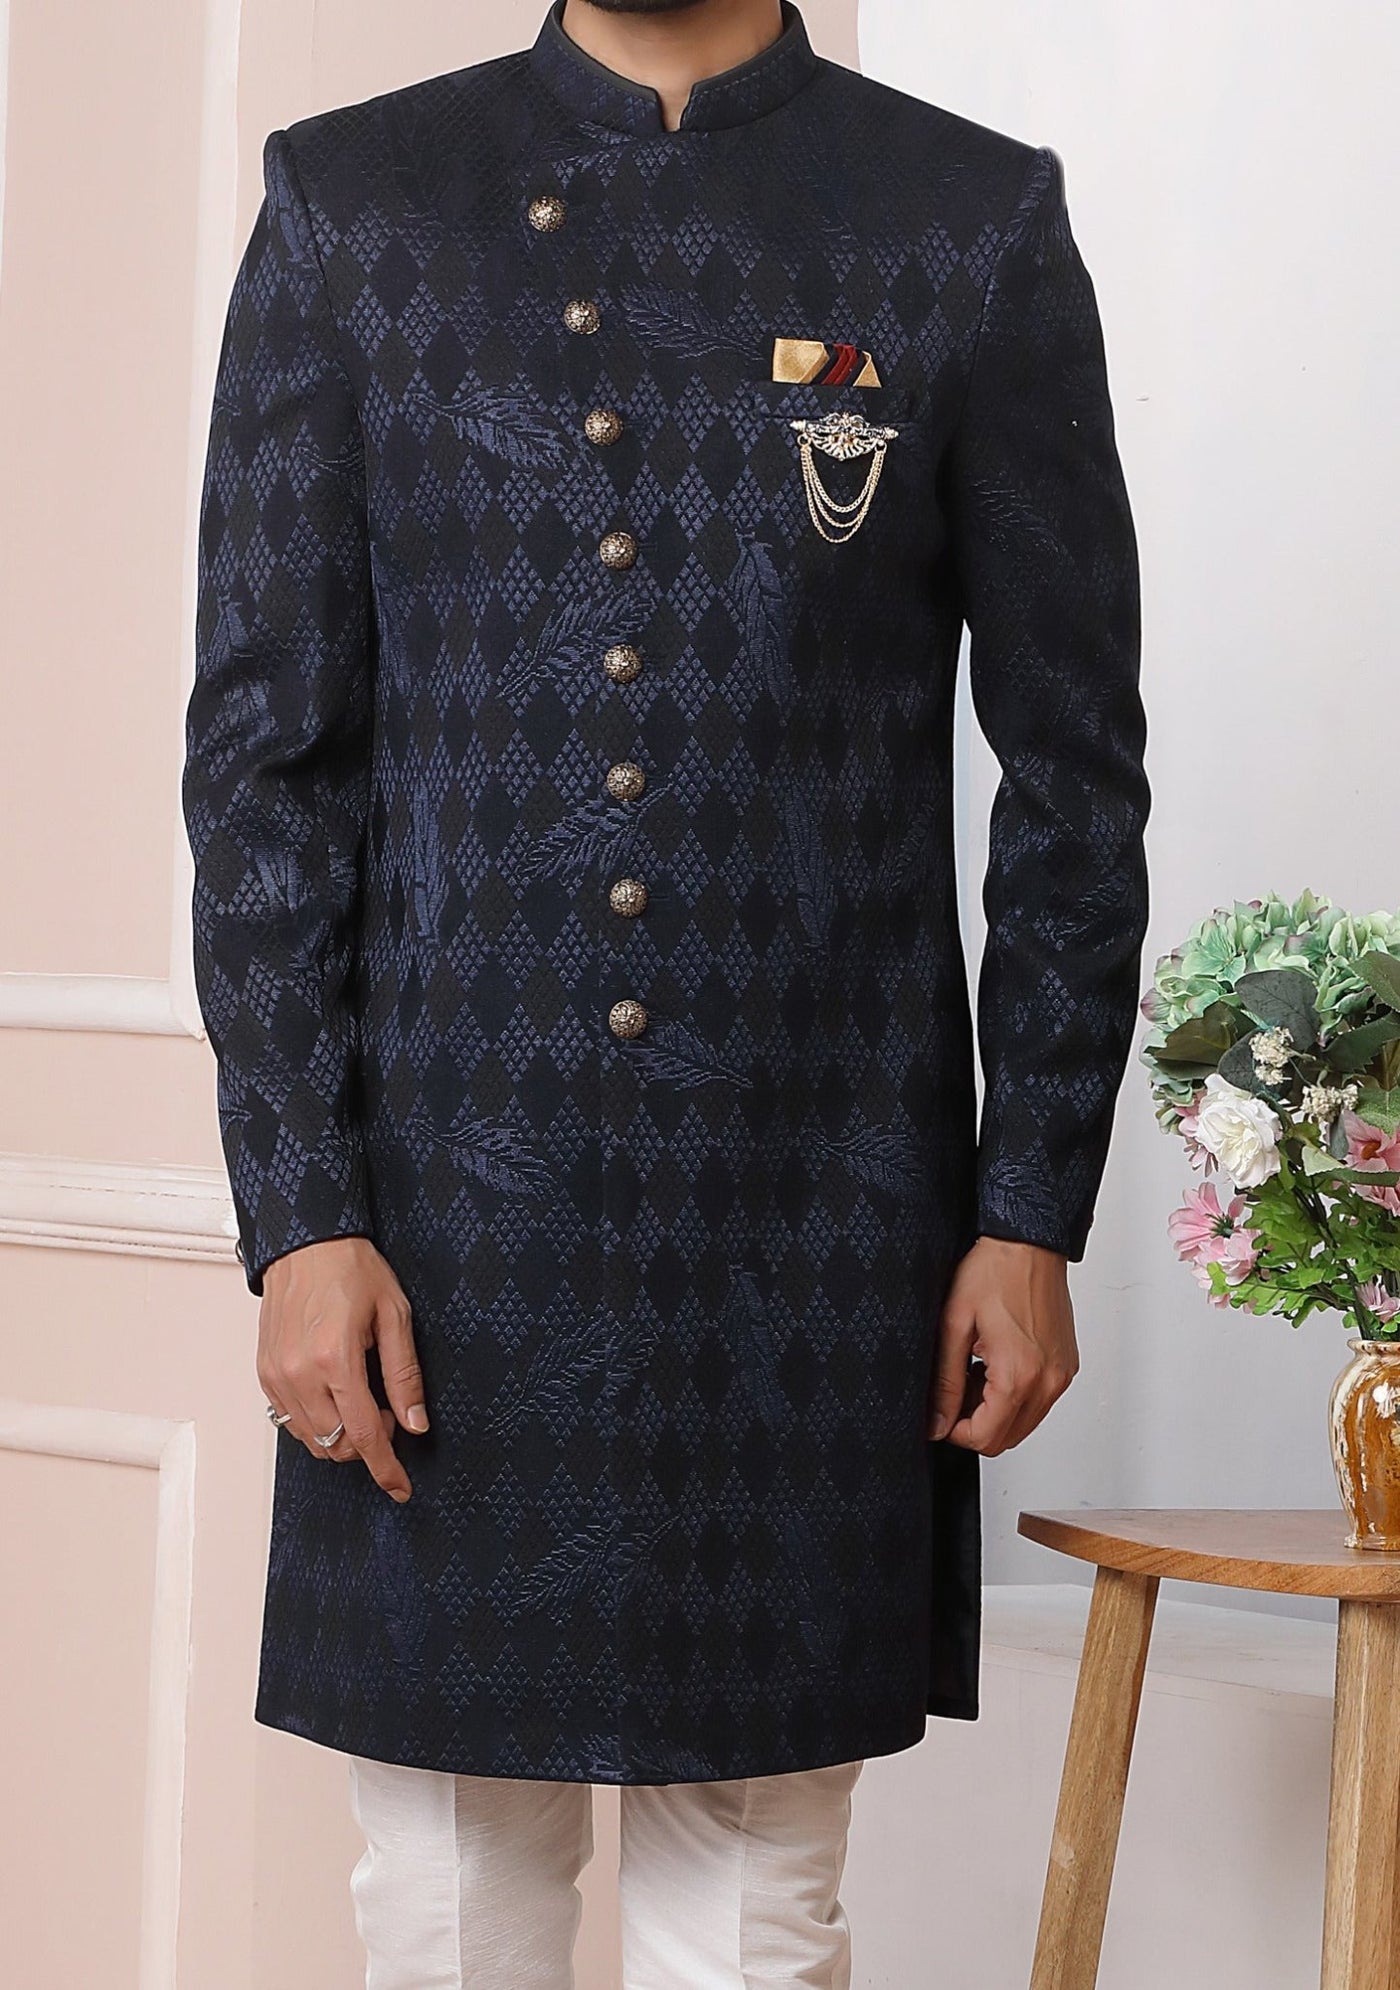 Men's Indo Western Party Wear Sherwani Suit - db20460